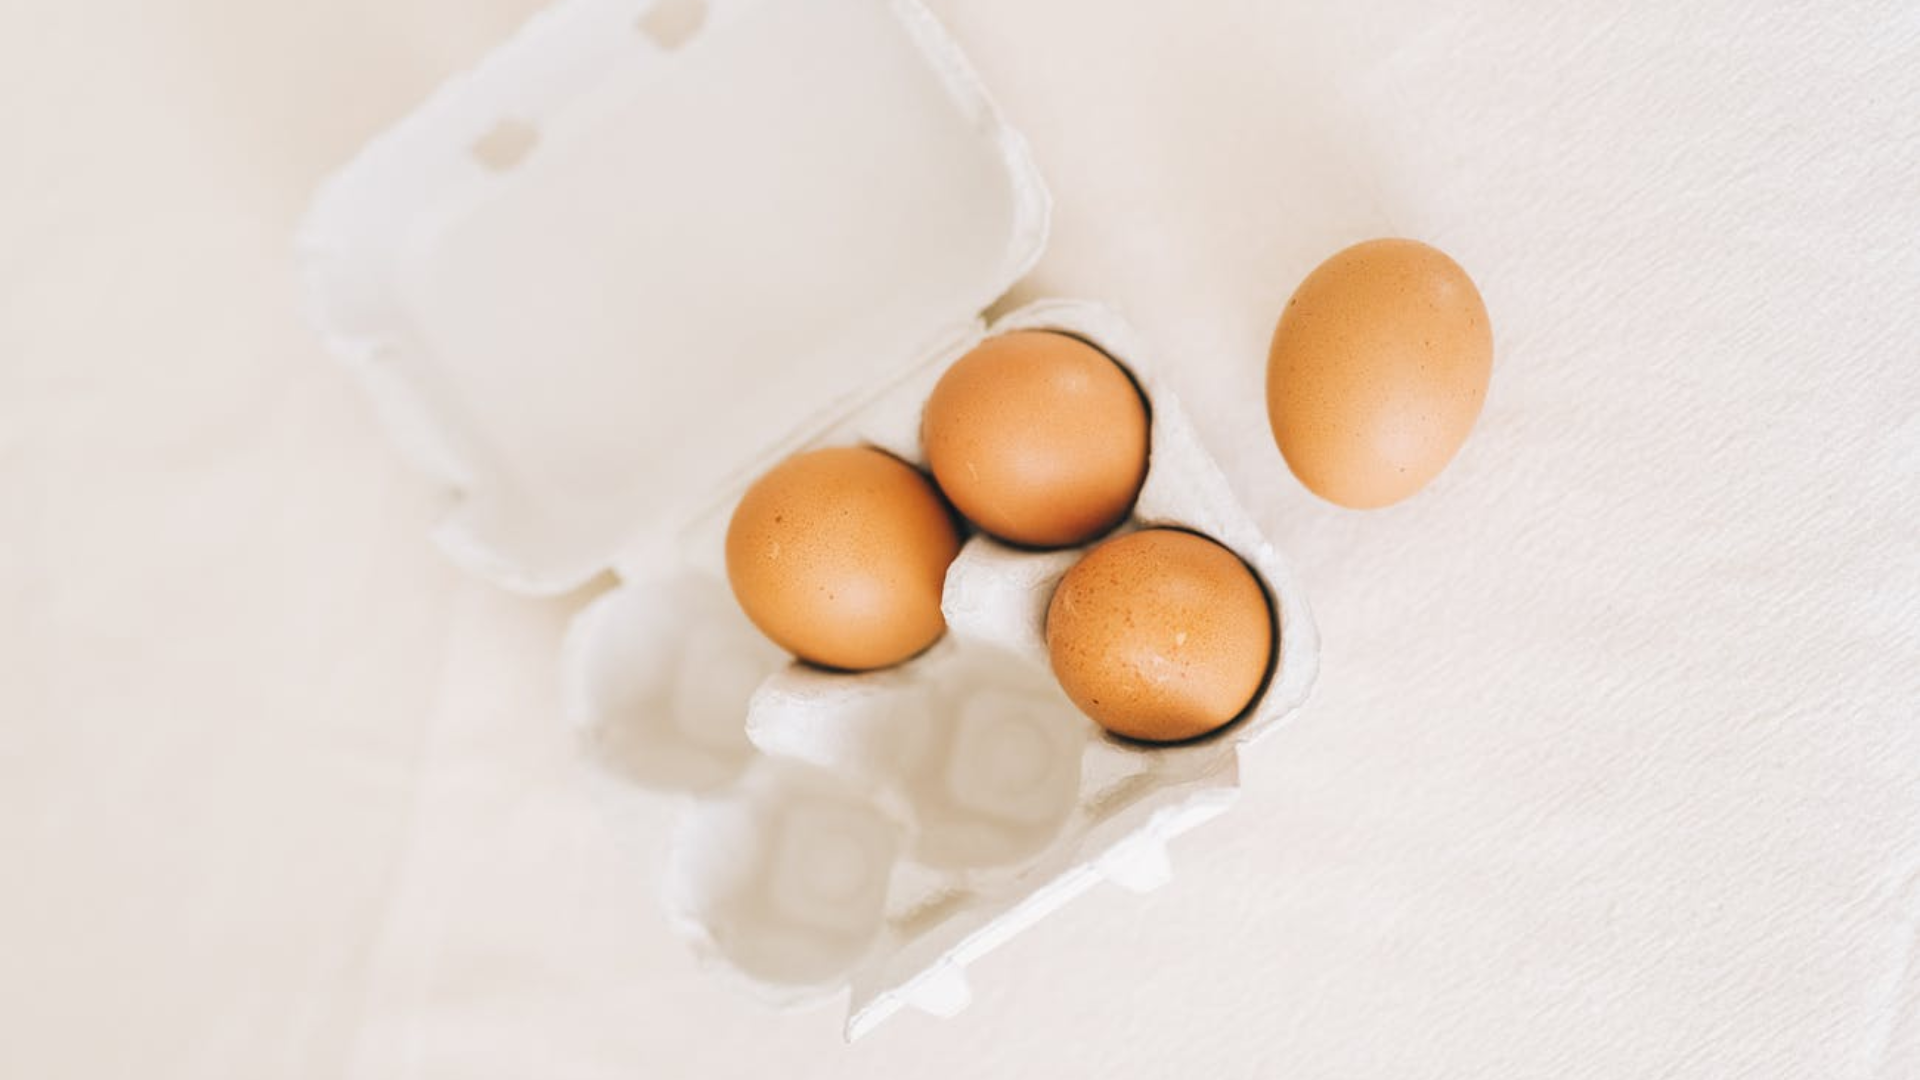 Yumurtanın faydaları yazısı için kullanılan yumurta görseli.